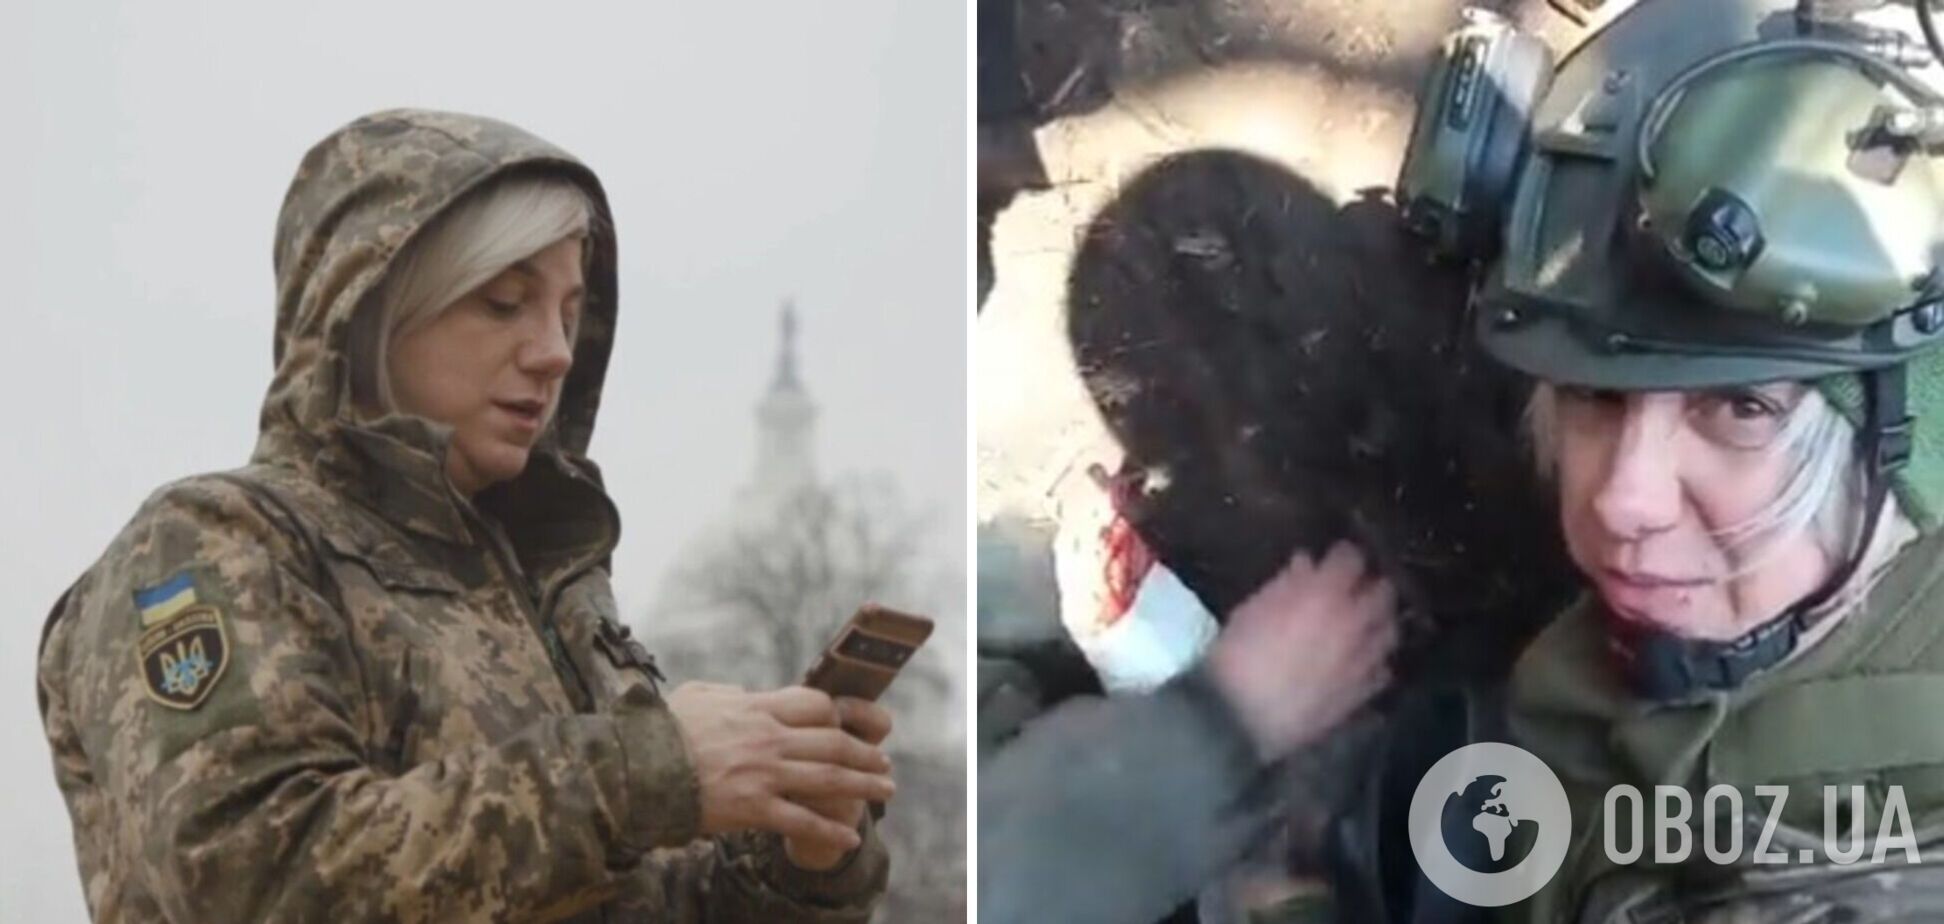 'Горда, что я в ВСУ': американская журналистка Сара Эштон-Сирилло, защищающая Украину, получила ранения на фронте. Фото и видео